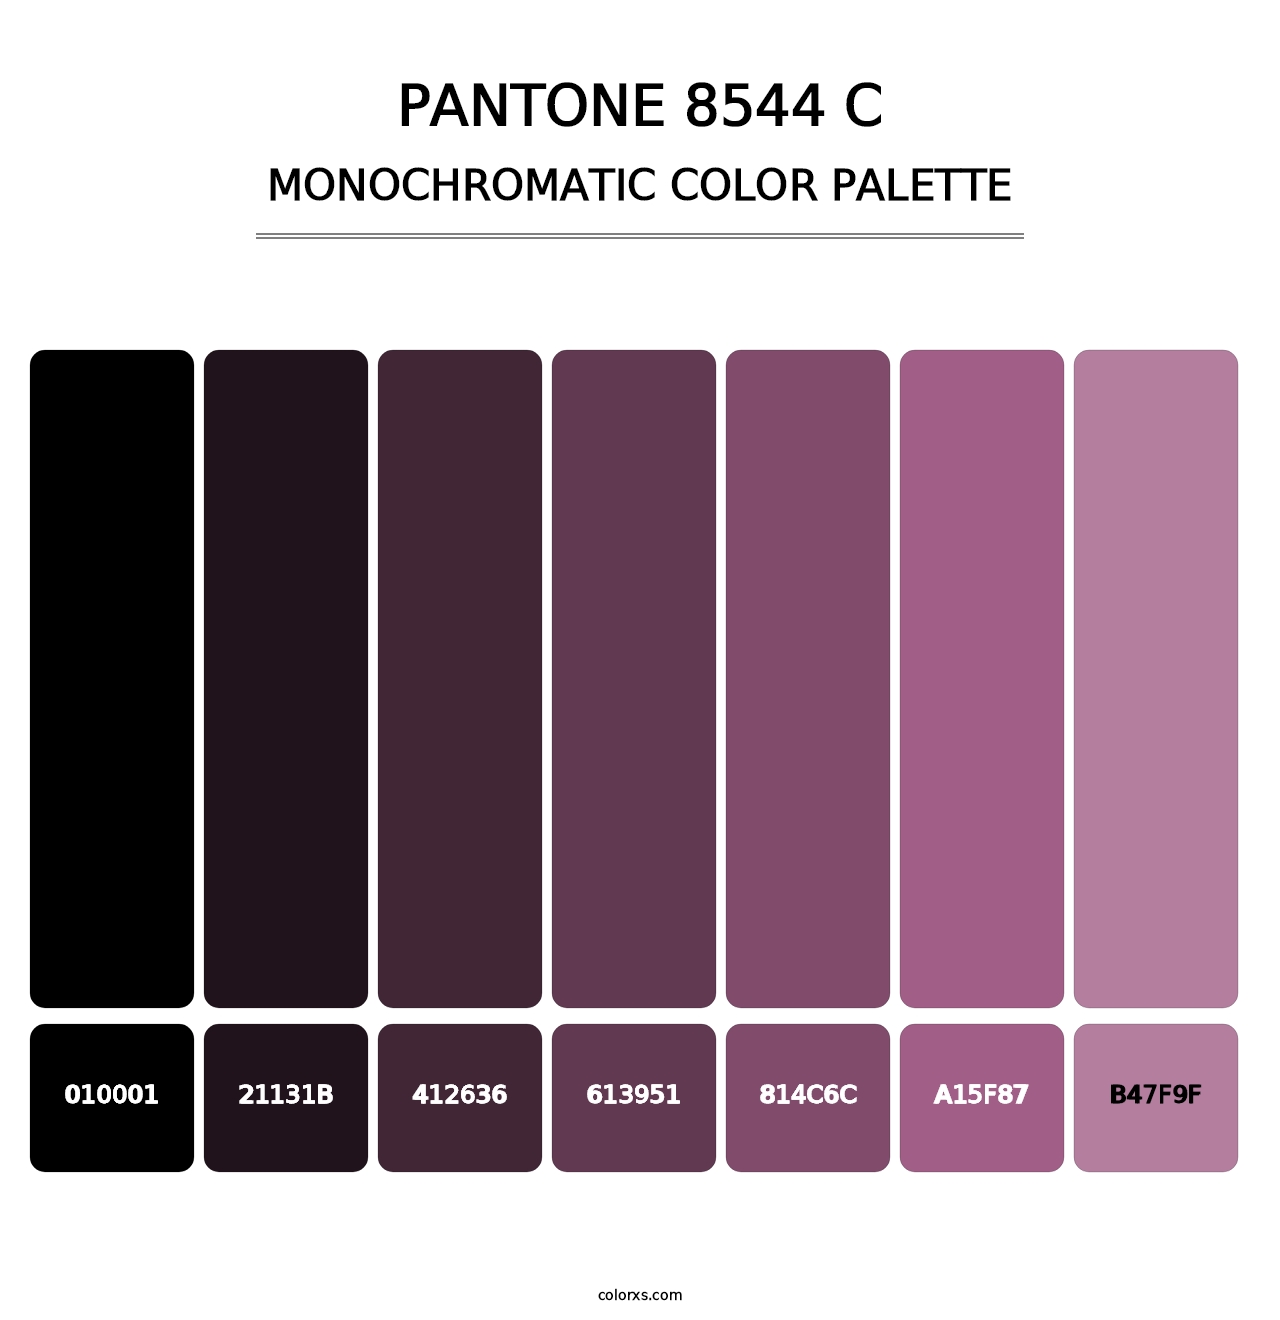 PANTONE 8544 C - Monochromatic Color Palette